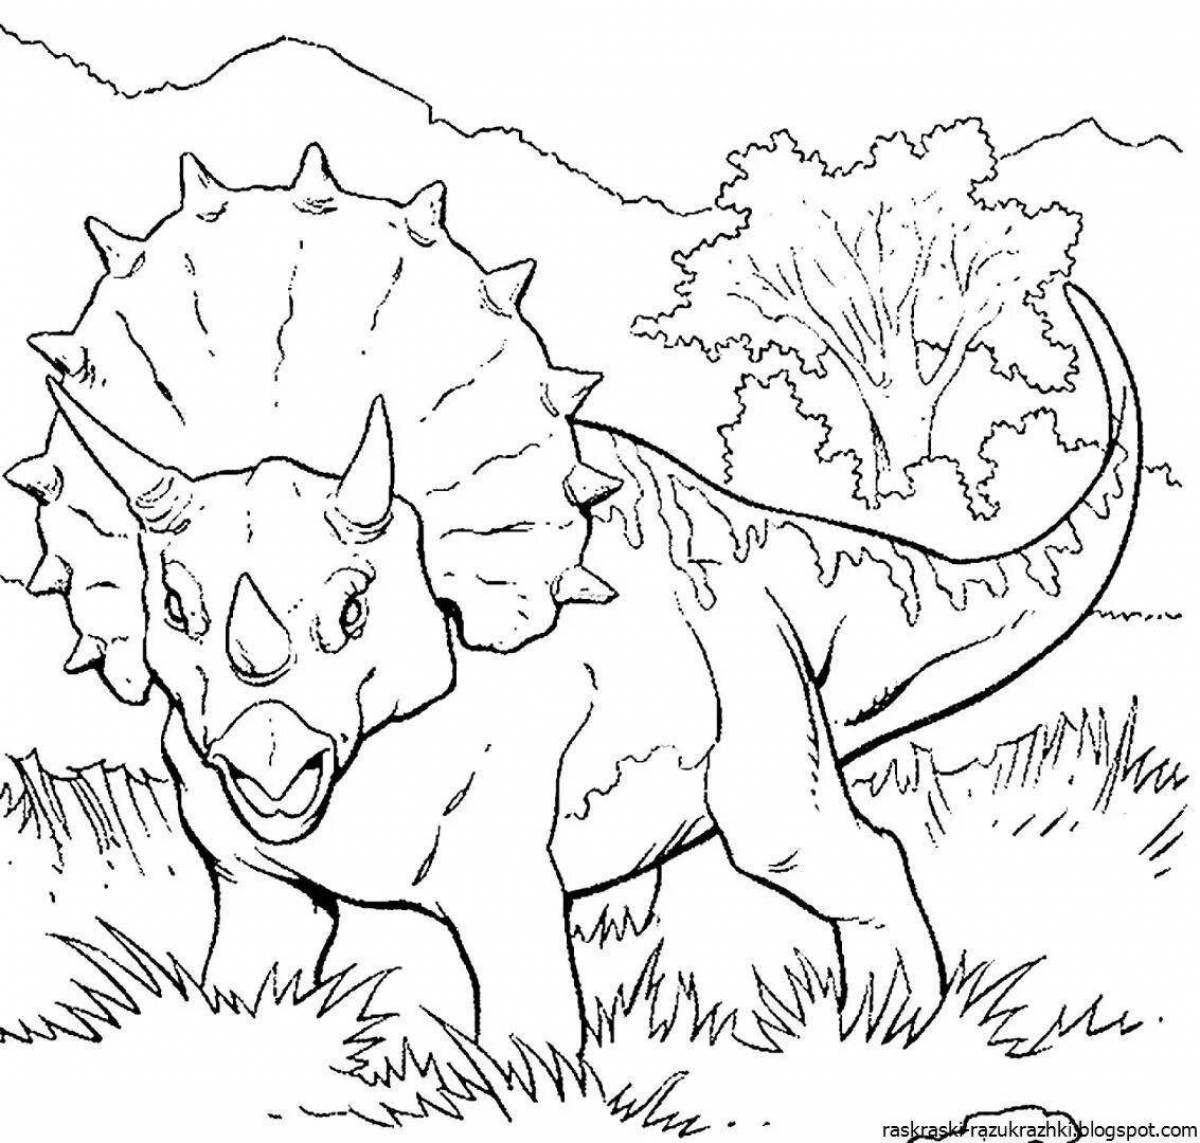 Превосходные рисунки динозавров для раскрашивания